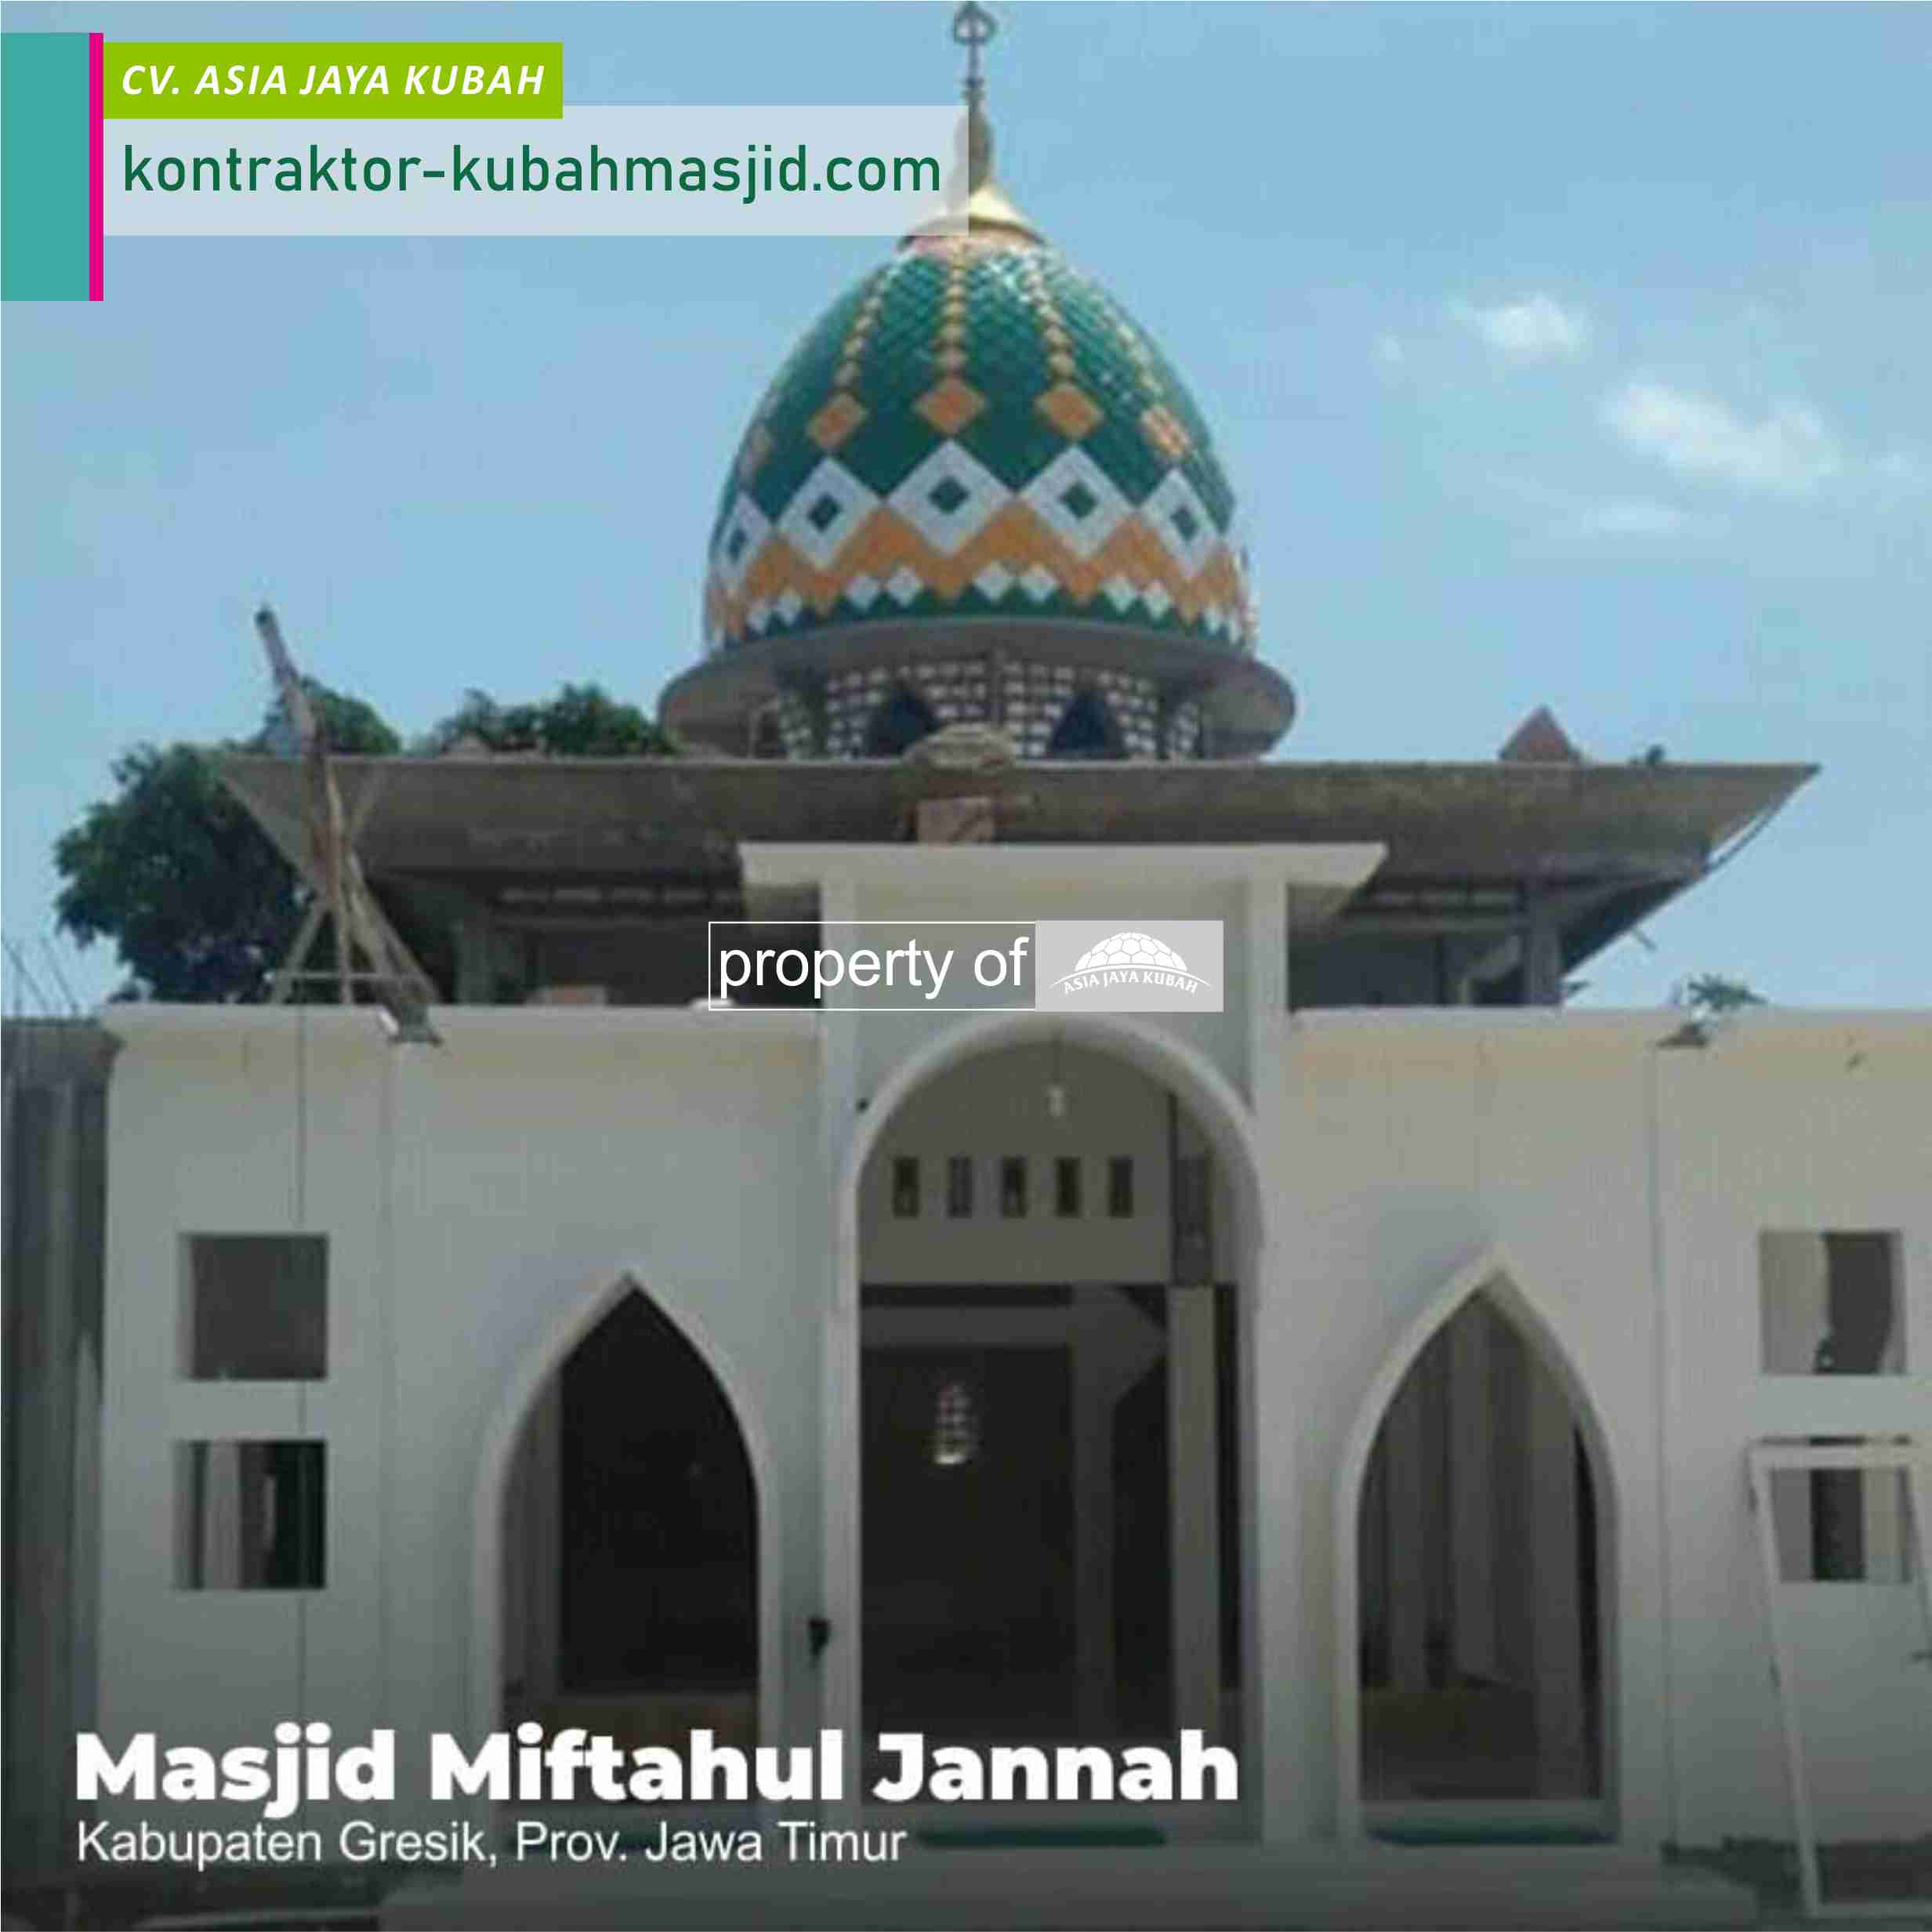 Harga Kubah Masjid Enamel 2020 di Pekanbaru